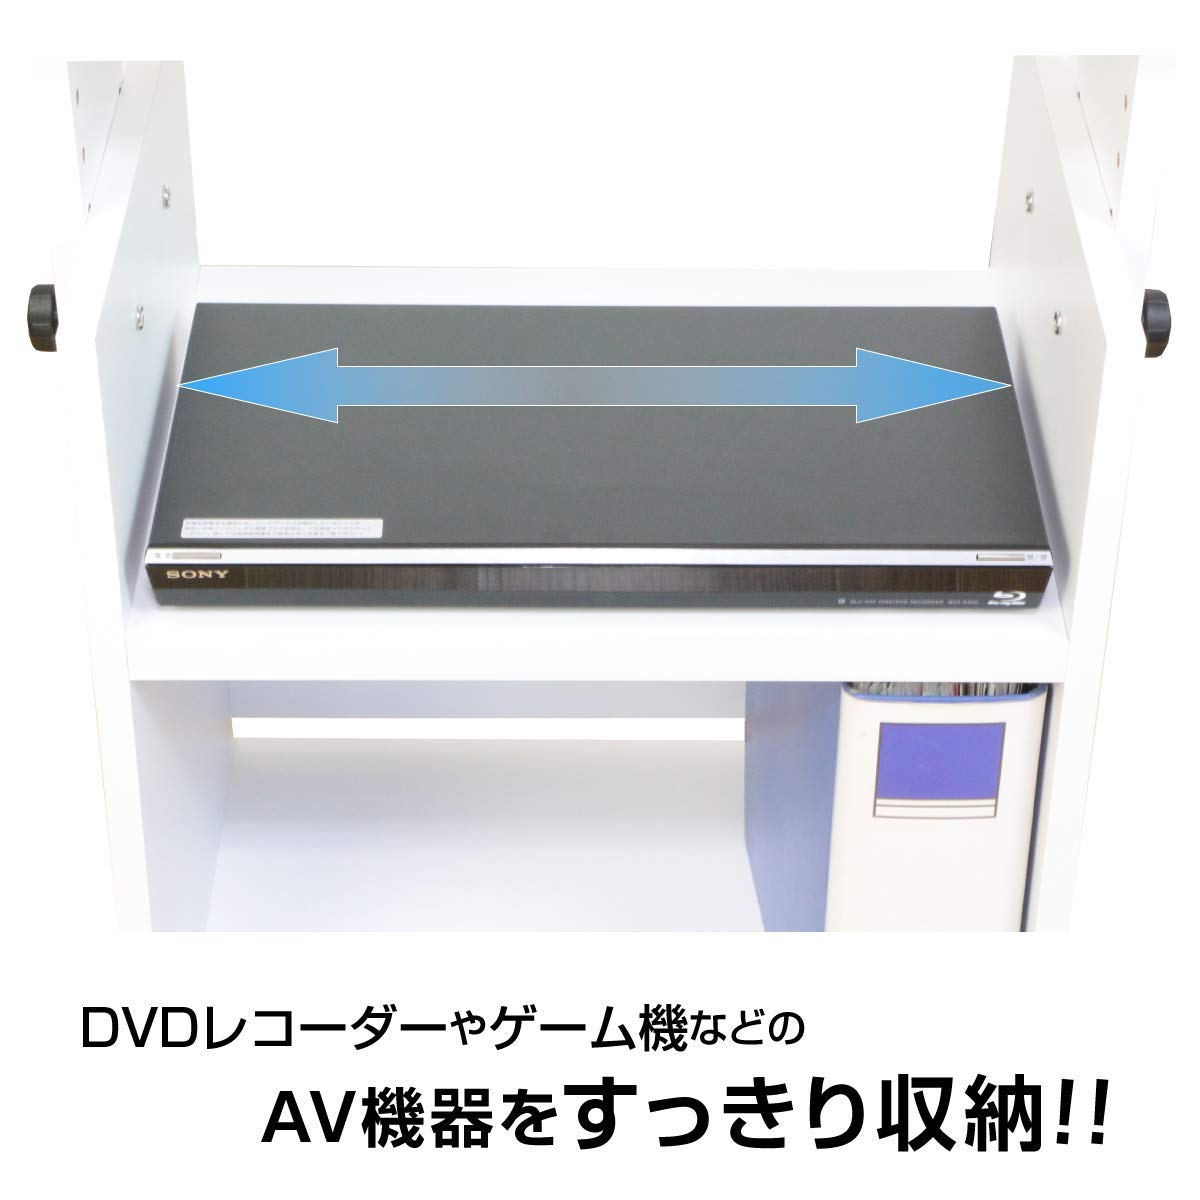 DVDレコーダー、ゲーム機を収納可能なプロジェクター台